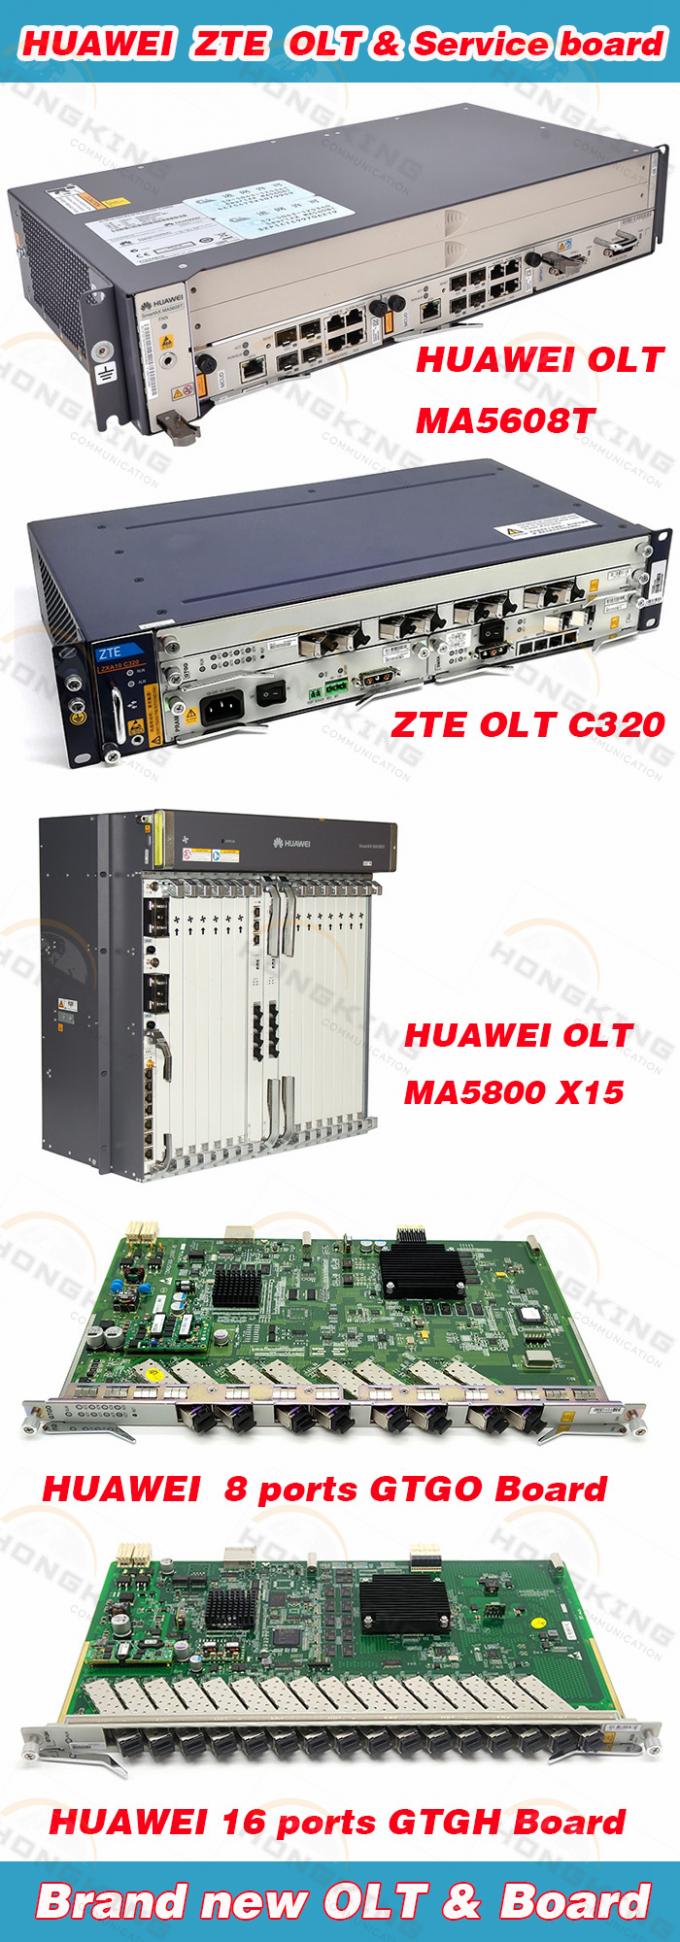 Первоначальное Olt Zxa10 C300 с доской Prwh+1*Gtgo доски Scxn+2*Power доски Huvq+2*Control uplink 2*10g